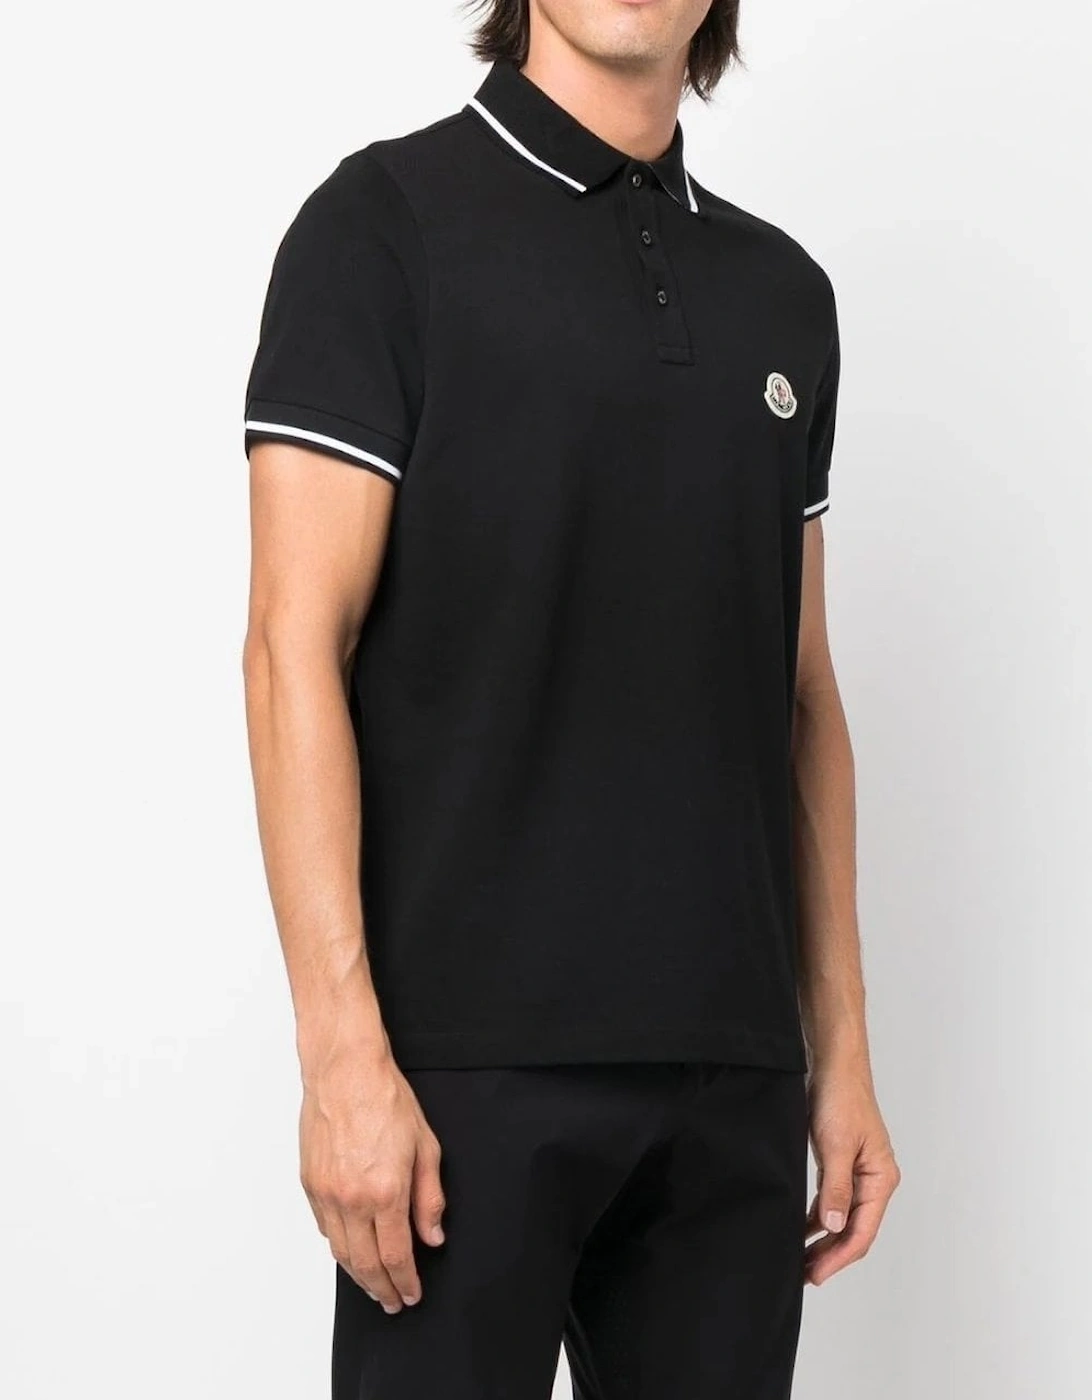 Contrast Collar Polo Shirt Black